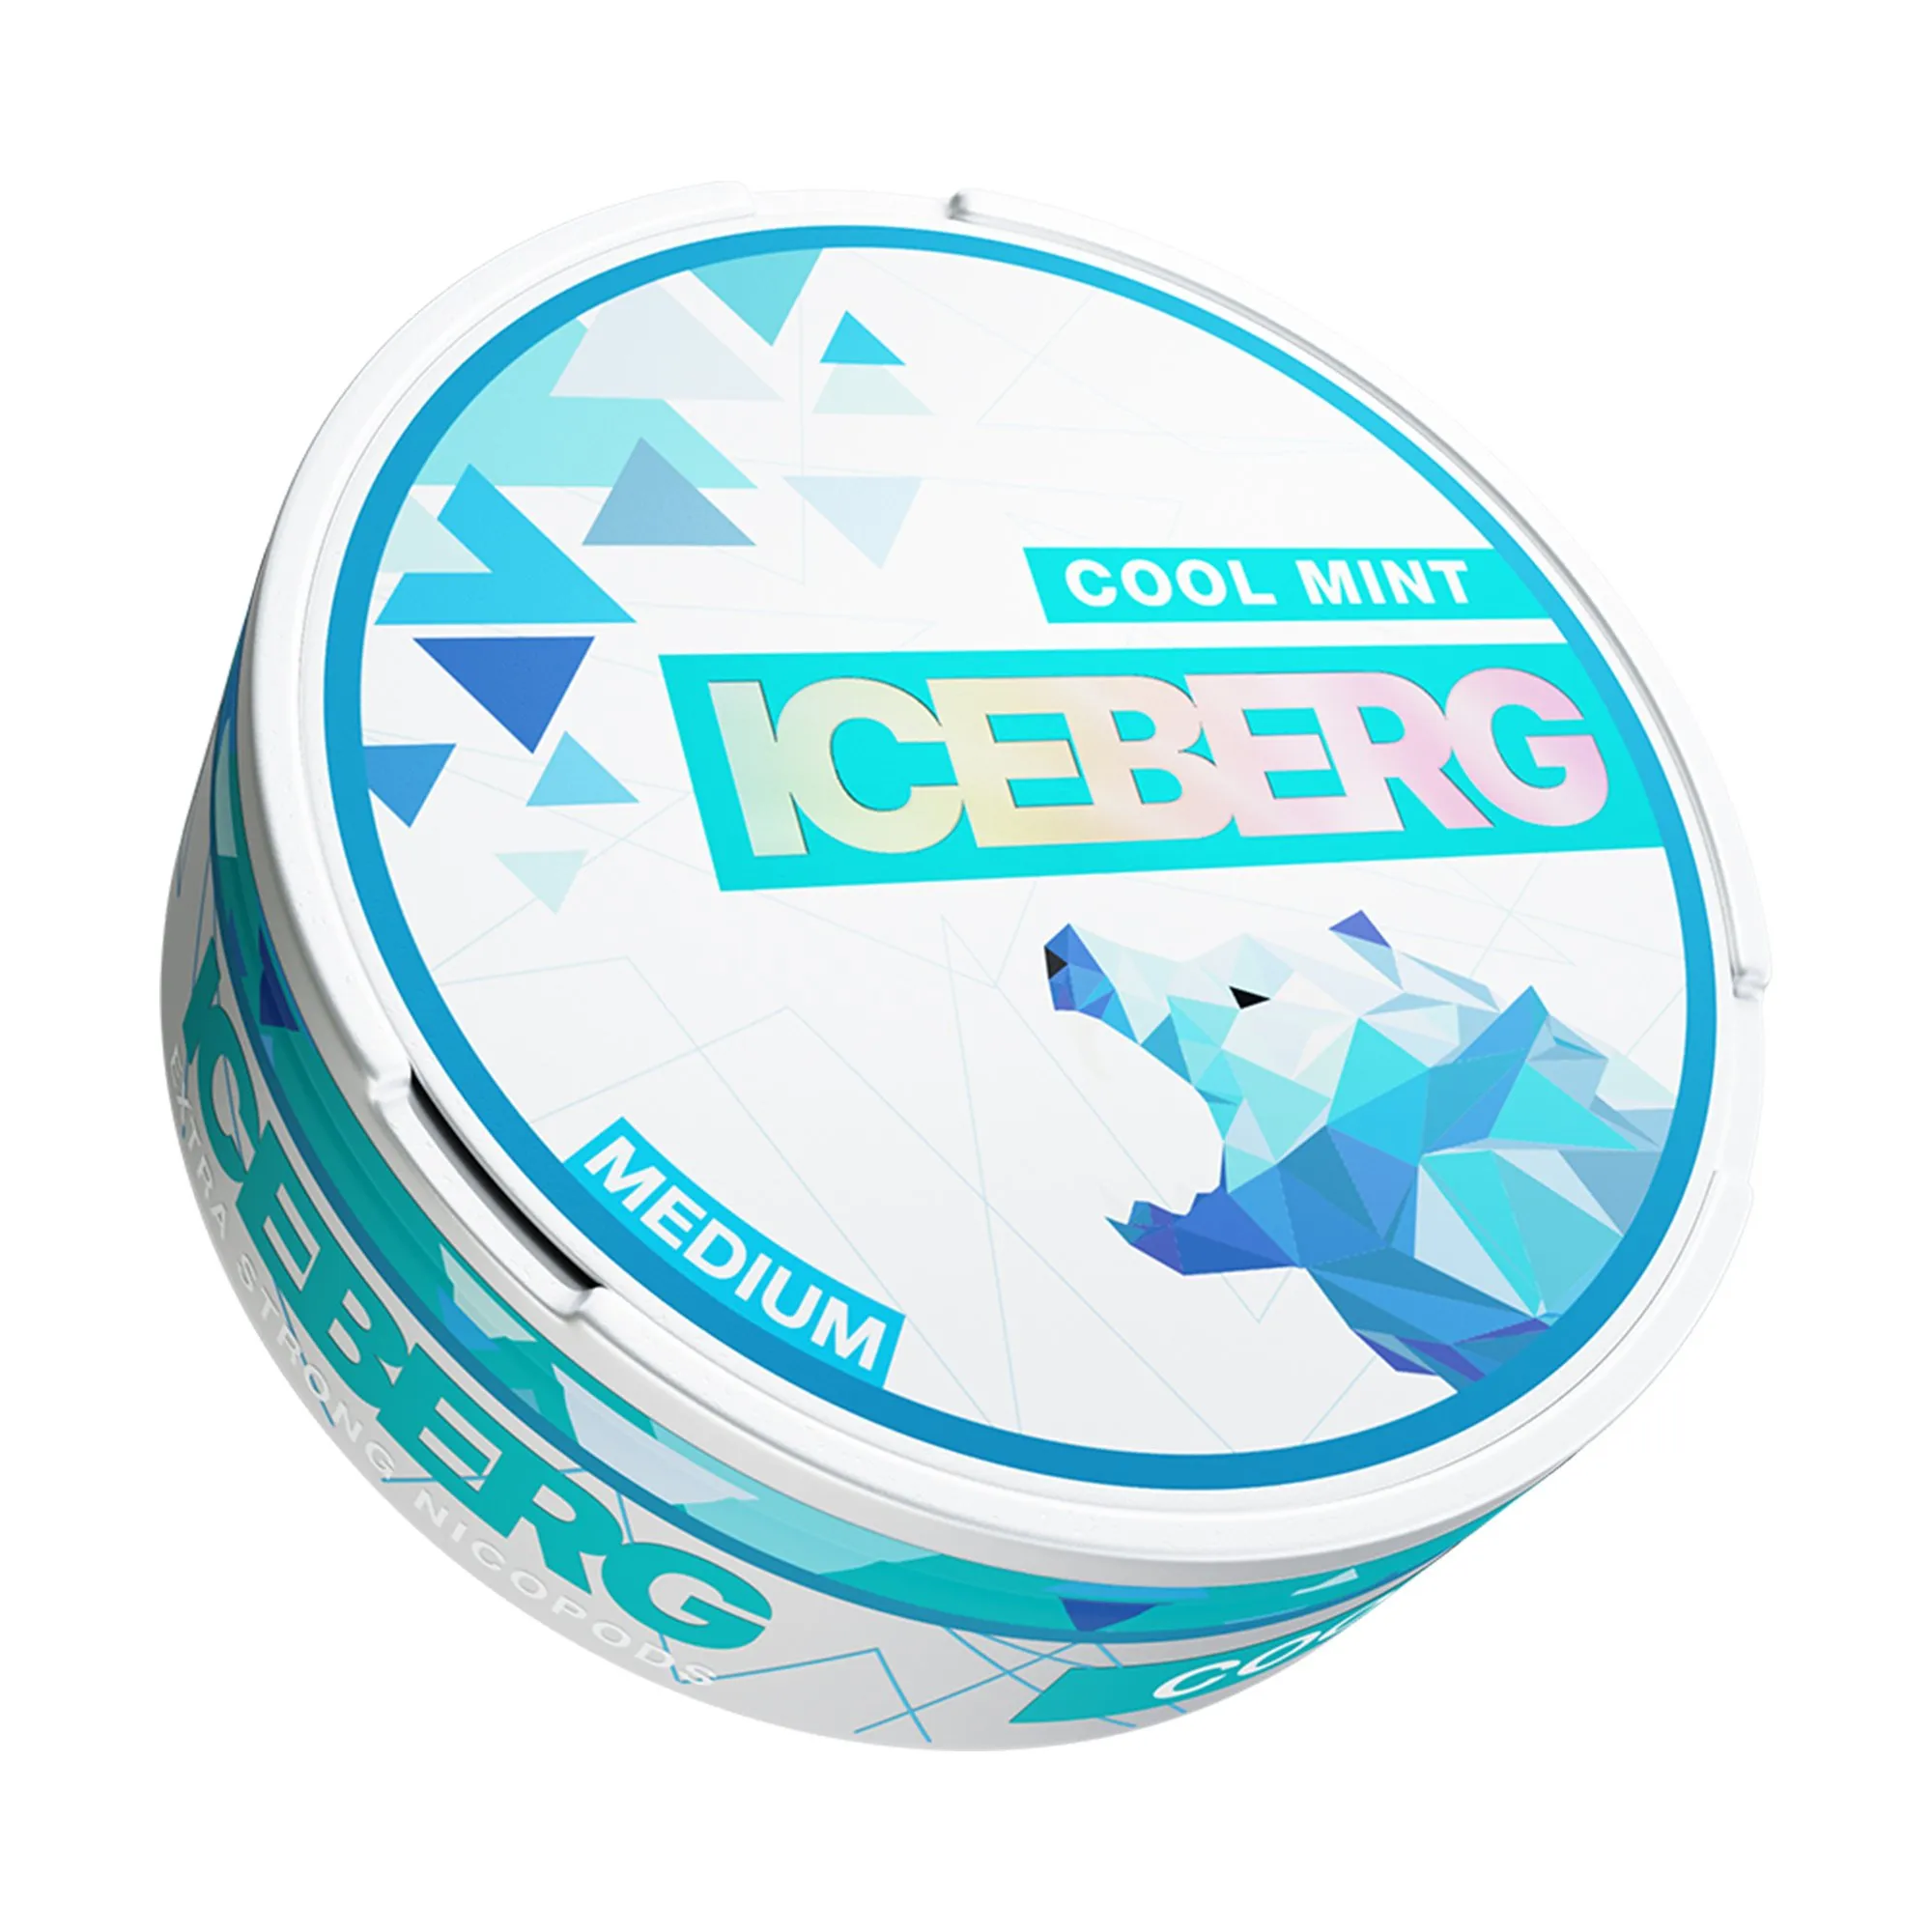 Iceberg Cool Mint Medium